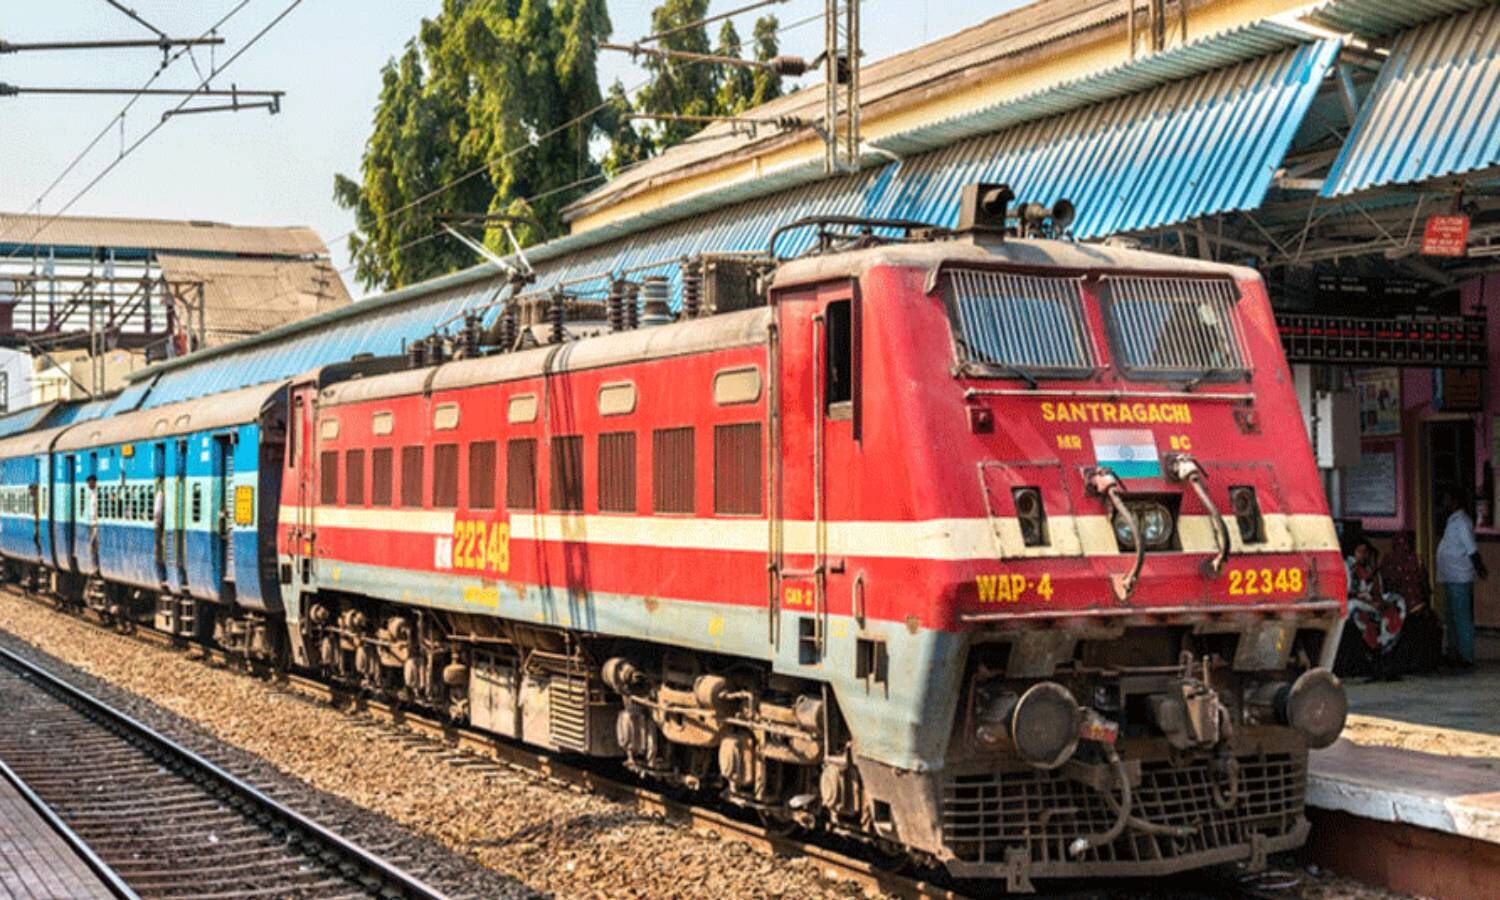 Lucknow news : नशाखोर पति के साथ जिंदगी हुई नर्क तो महिला ने 2 बच्चों के साथ कर ली ट्रेन के आगे आकर आत्महत्या (file photo)